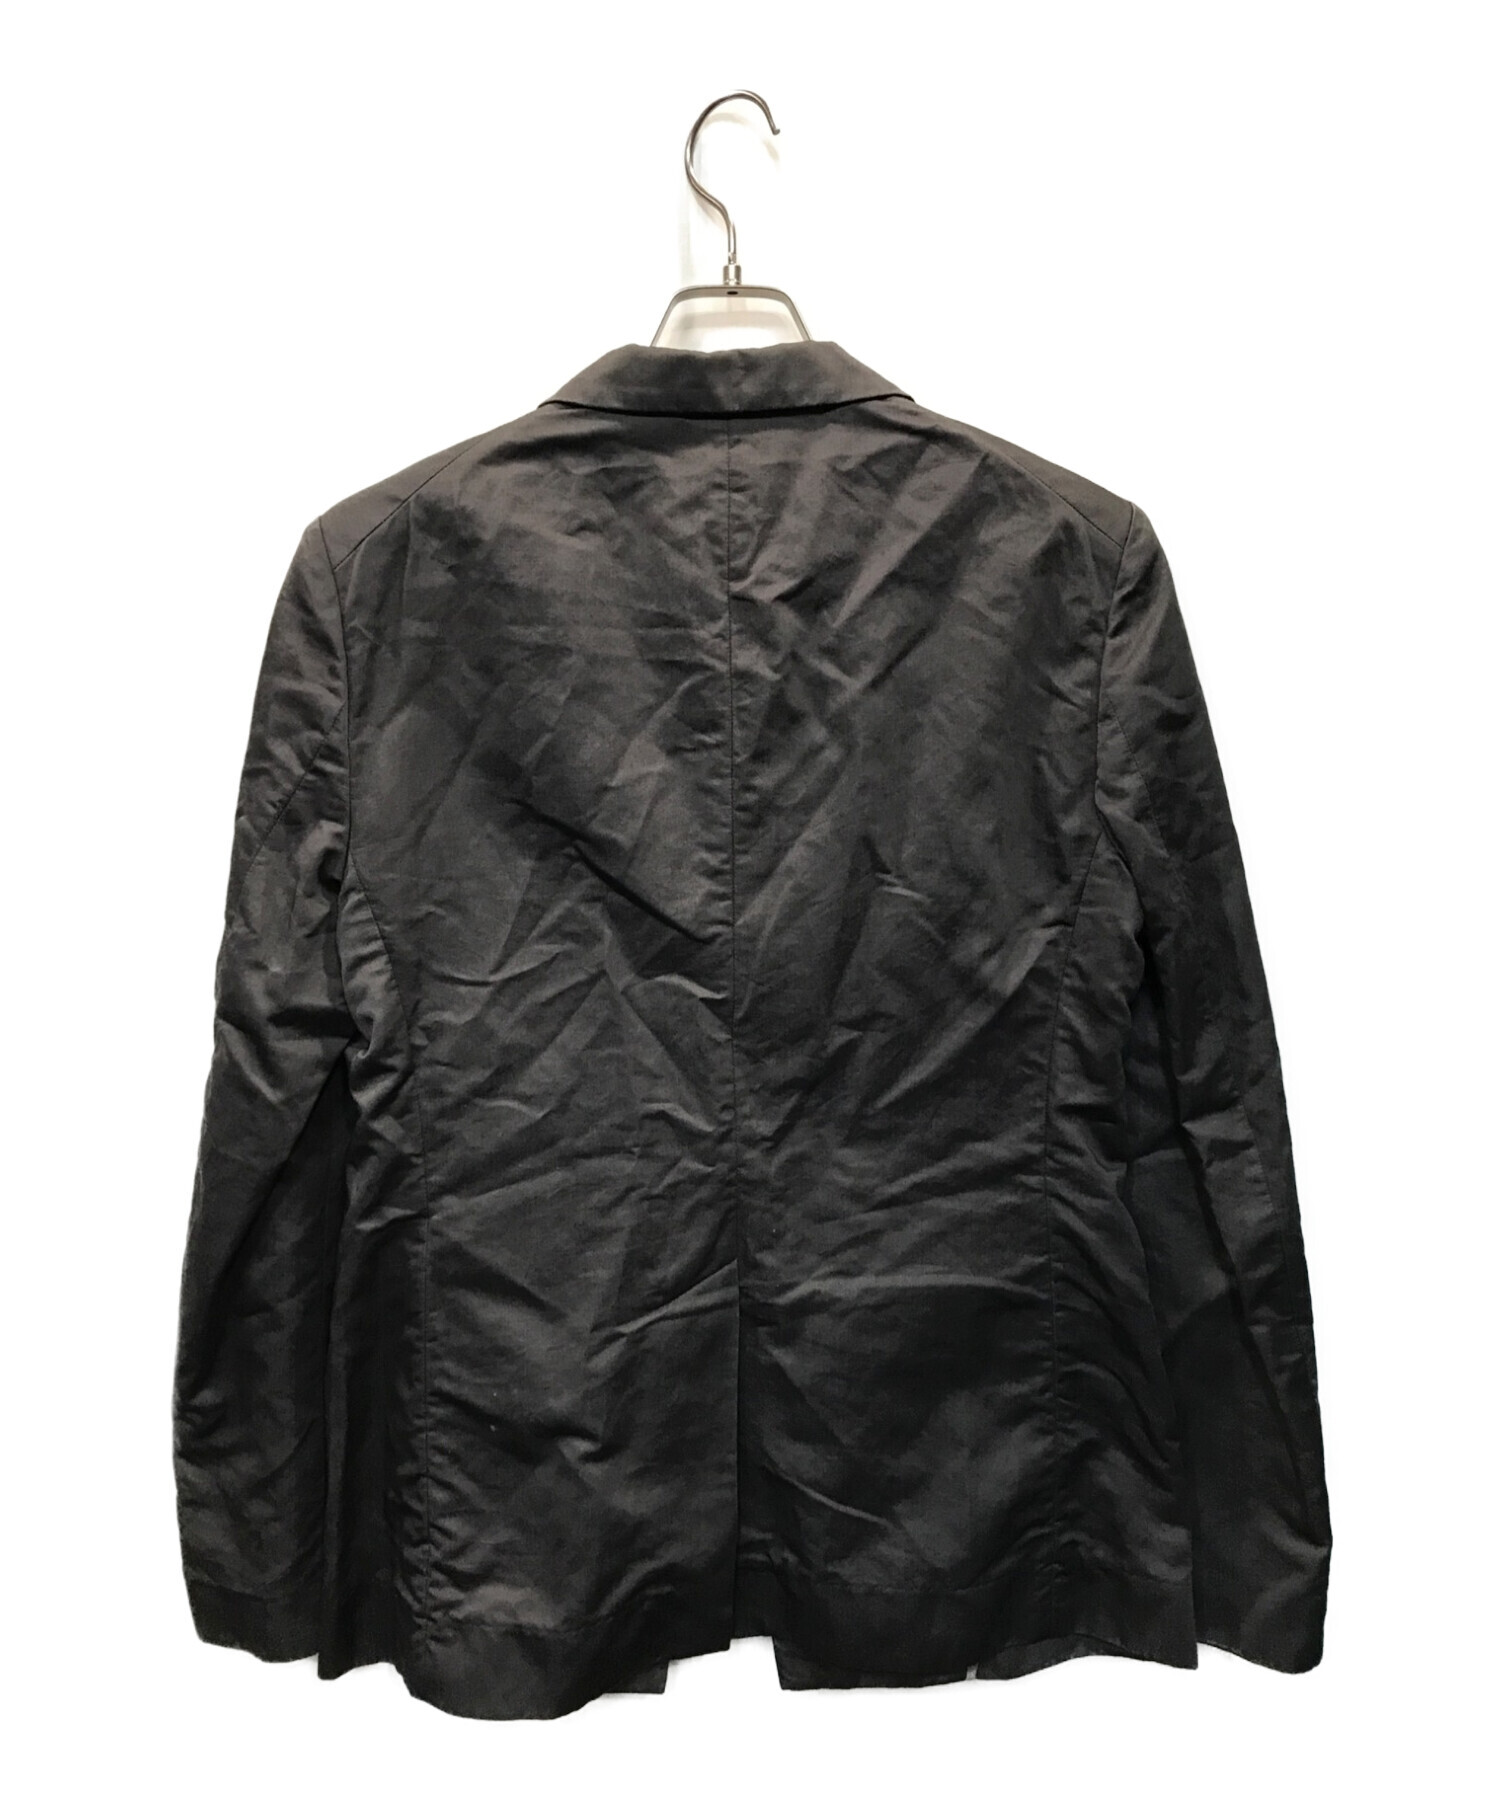 46サイズVivienne Westwood ジャケット 46サイズ - テーラードジャケット